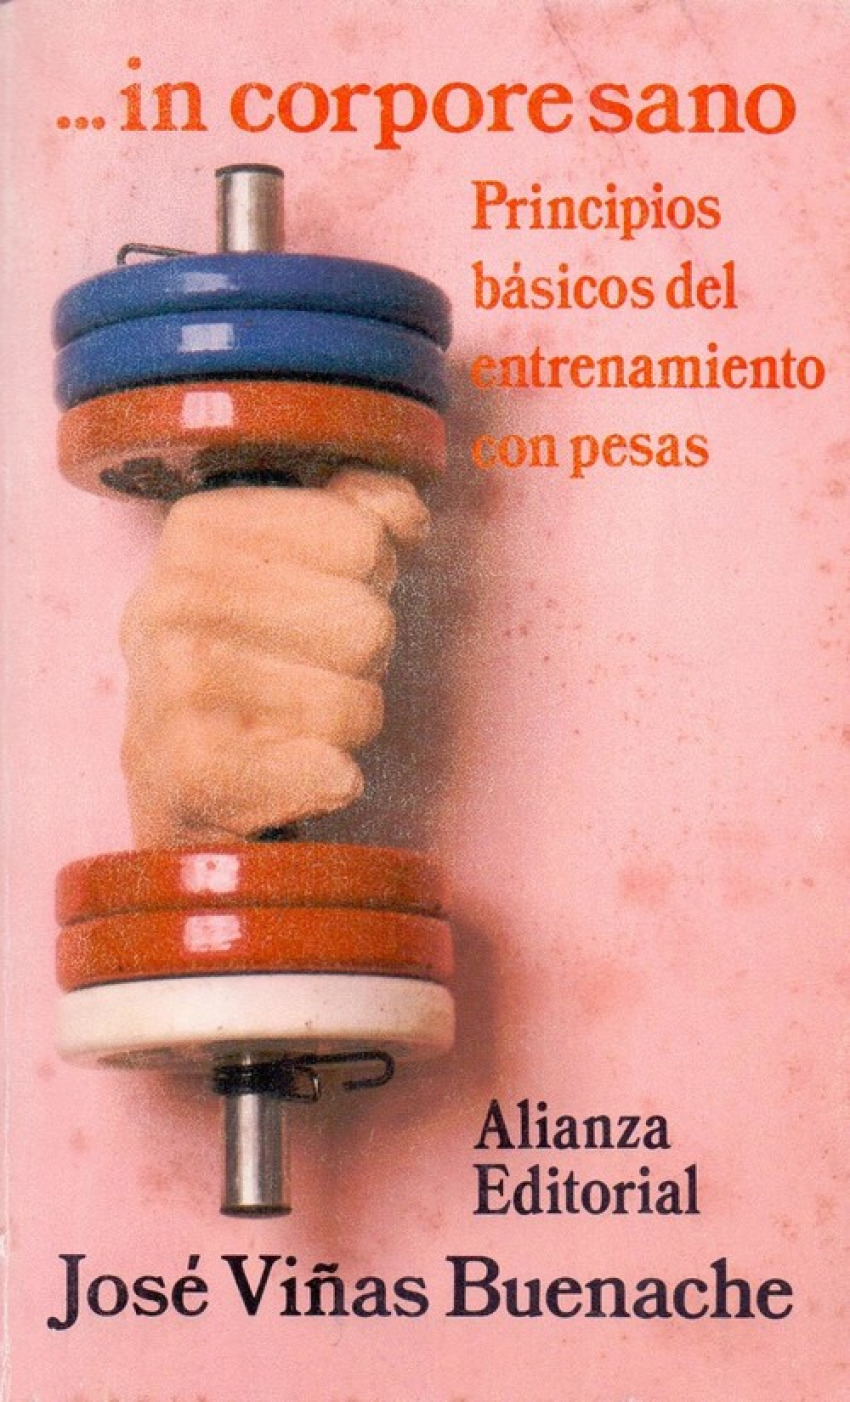 In corpore sano Principios básicso del entrenamiento con pesas - Viñas Buenache, Jose